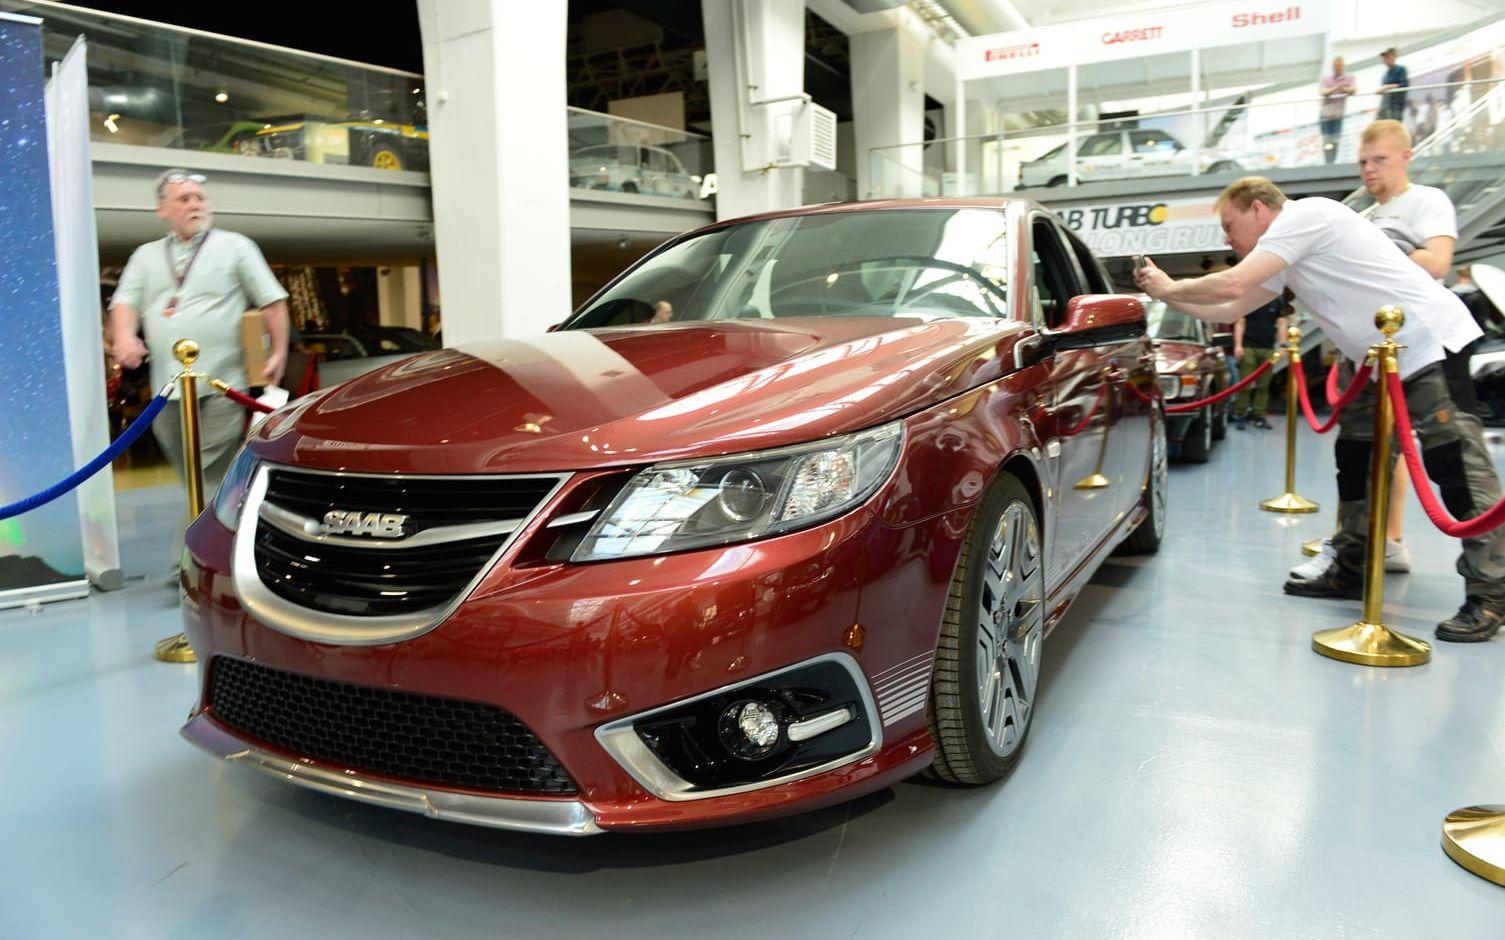 I fredags fick Saab Car Museum en gåva från Nevs och denna skapelse lockade till sig ett mycket stort intresse under festivalen. Det handlar om en 9-3:a som var tänkt att celebrera 40-årsjubileet av Saab turbo. Bild: Stefan Bennhage